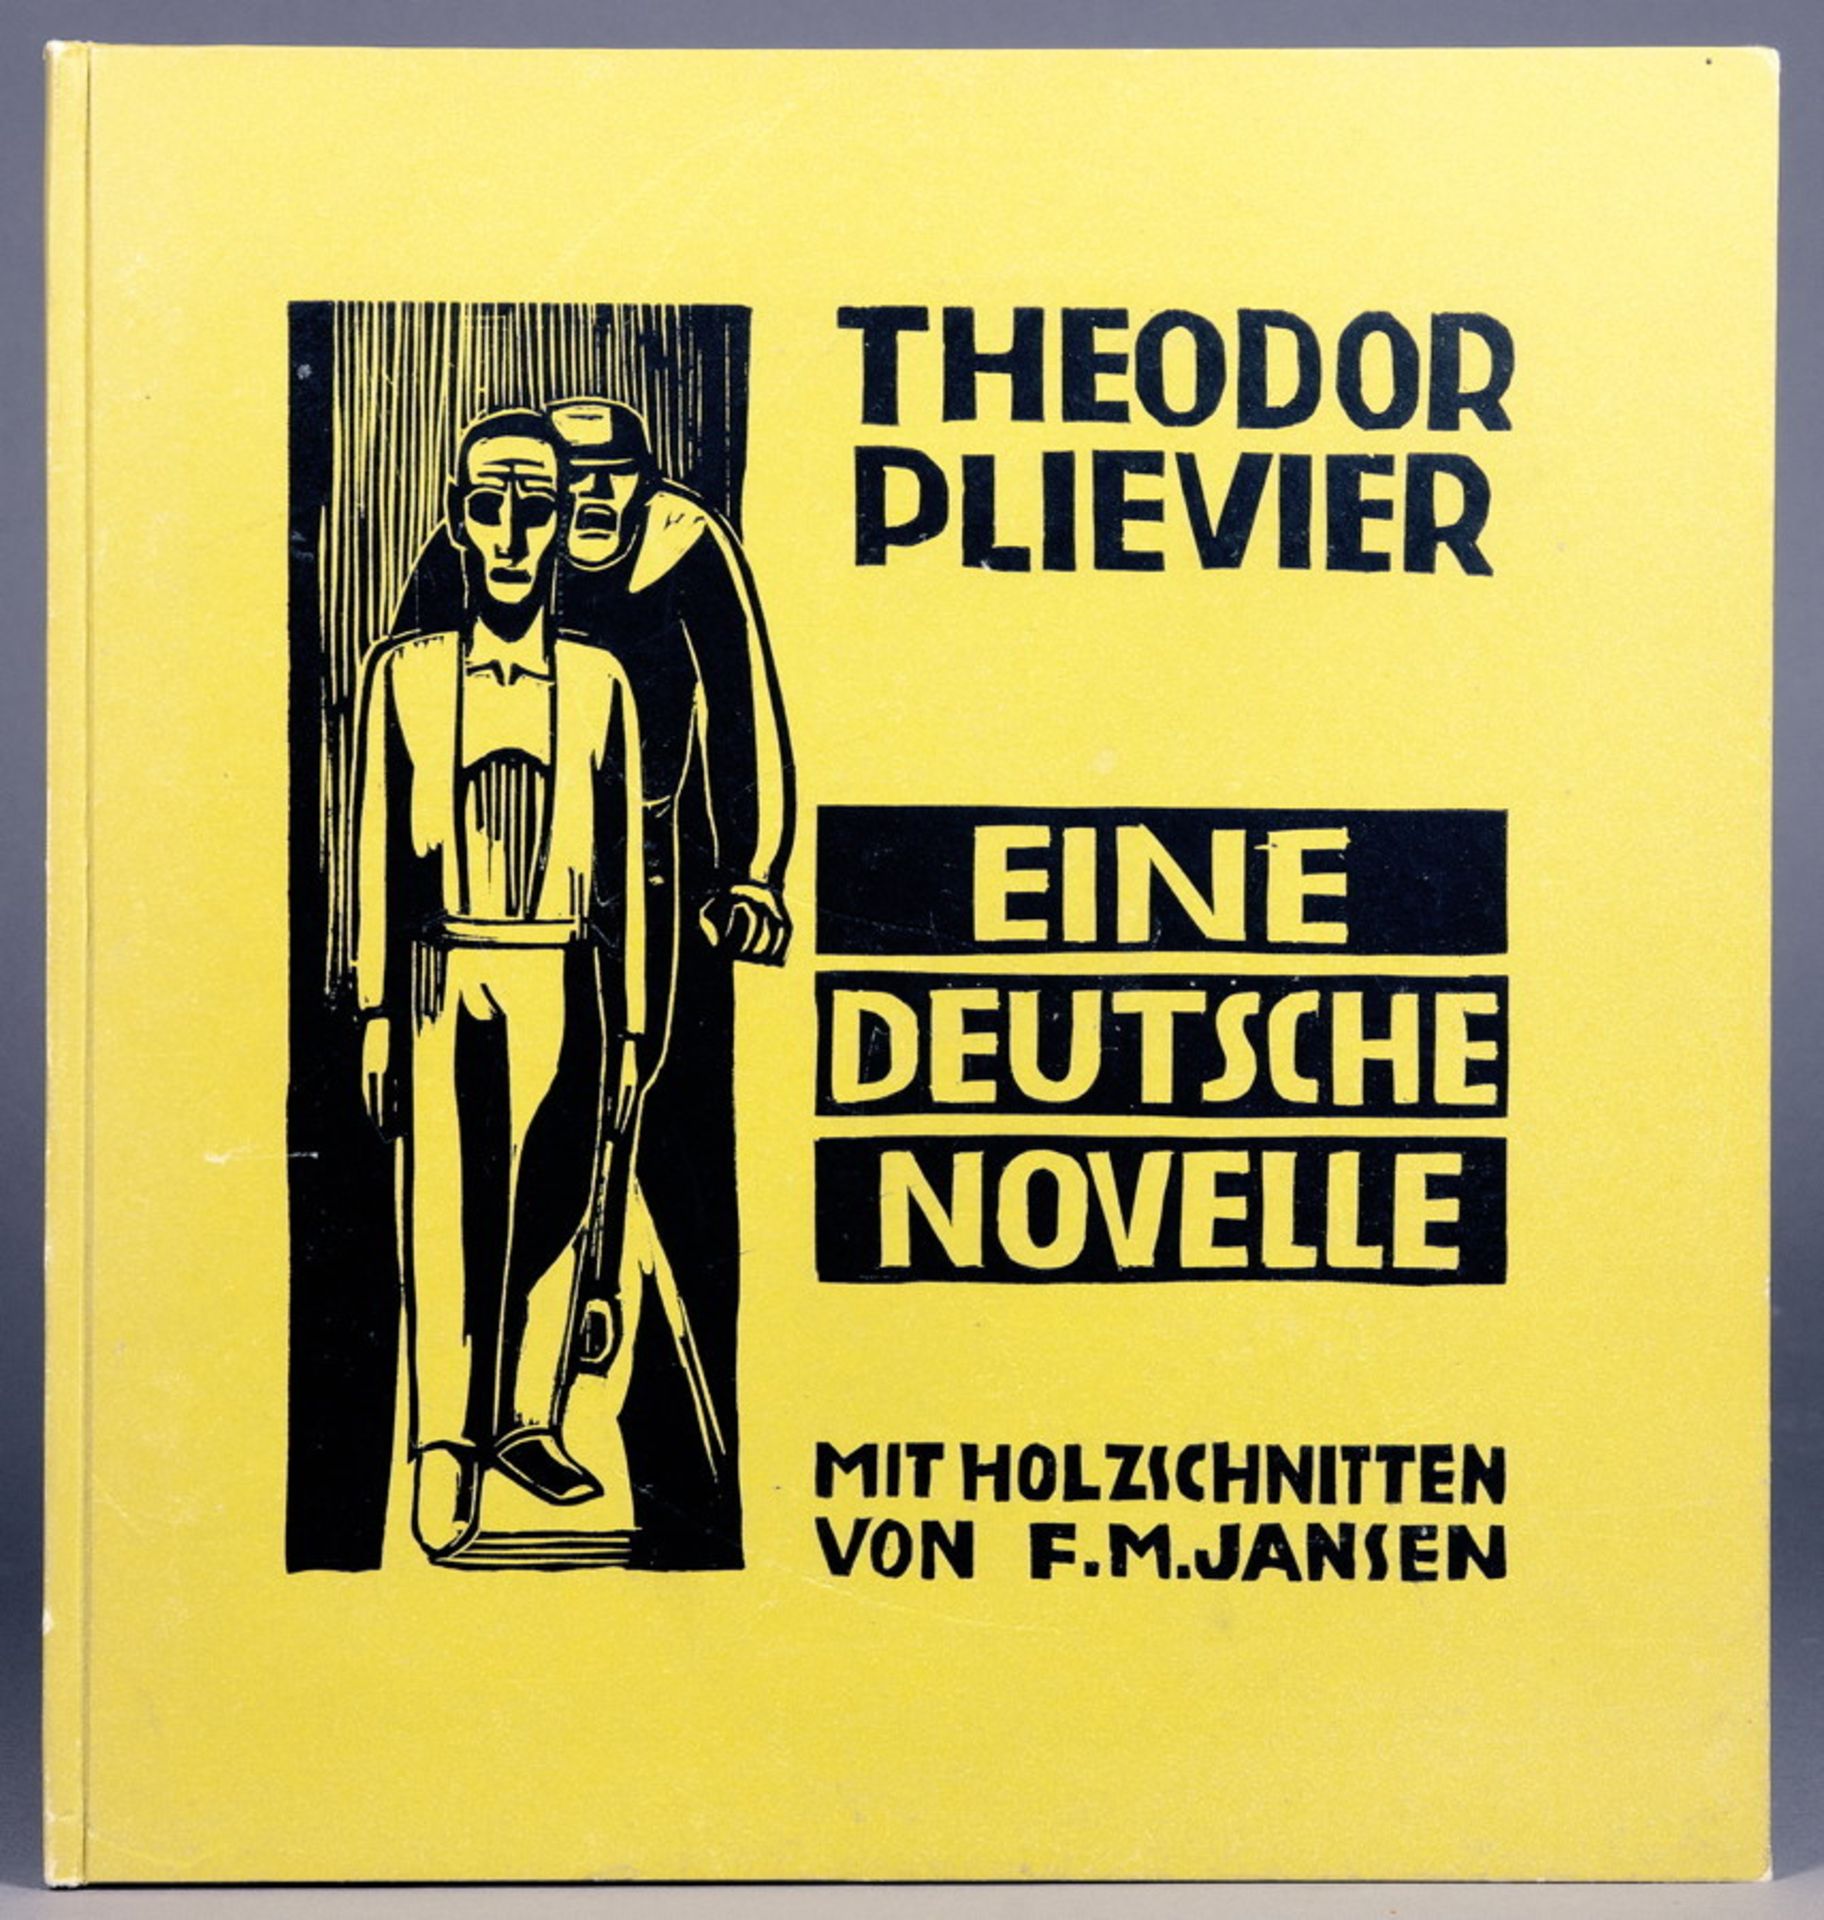 Franz M. Jansen - Theodor Plivier. Eine deutsche Novelle. Mit Holzschnitten von F. M. Jansen.